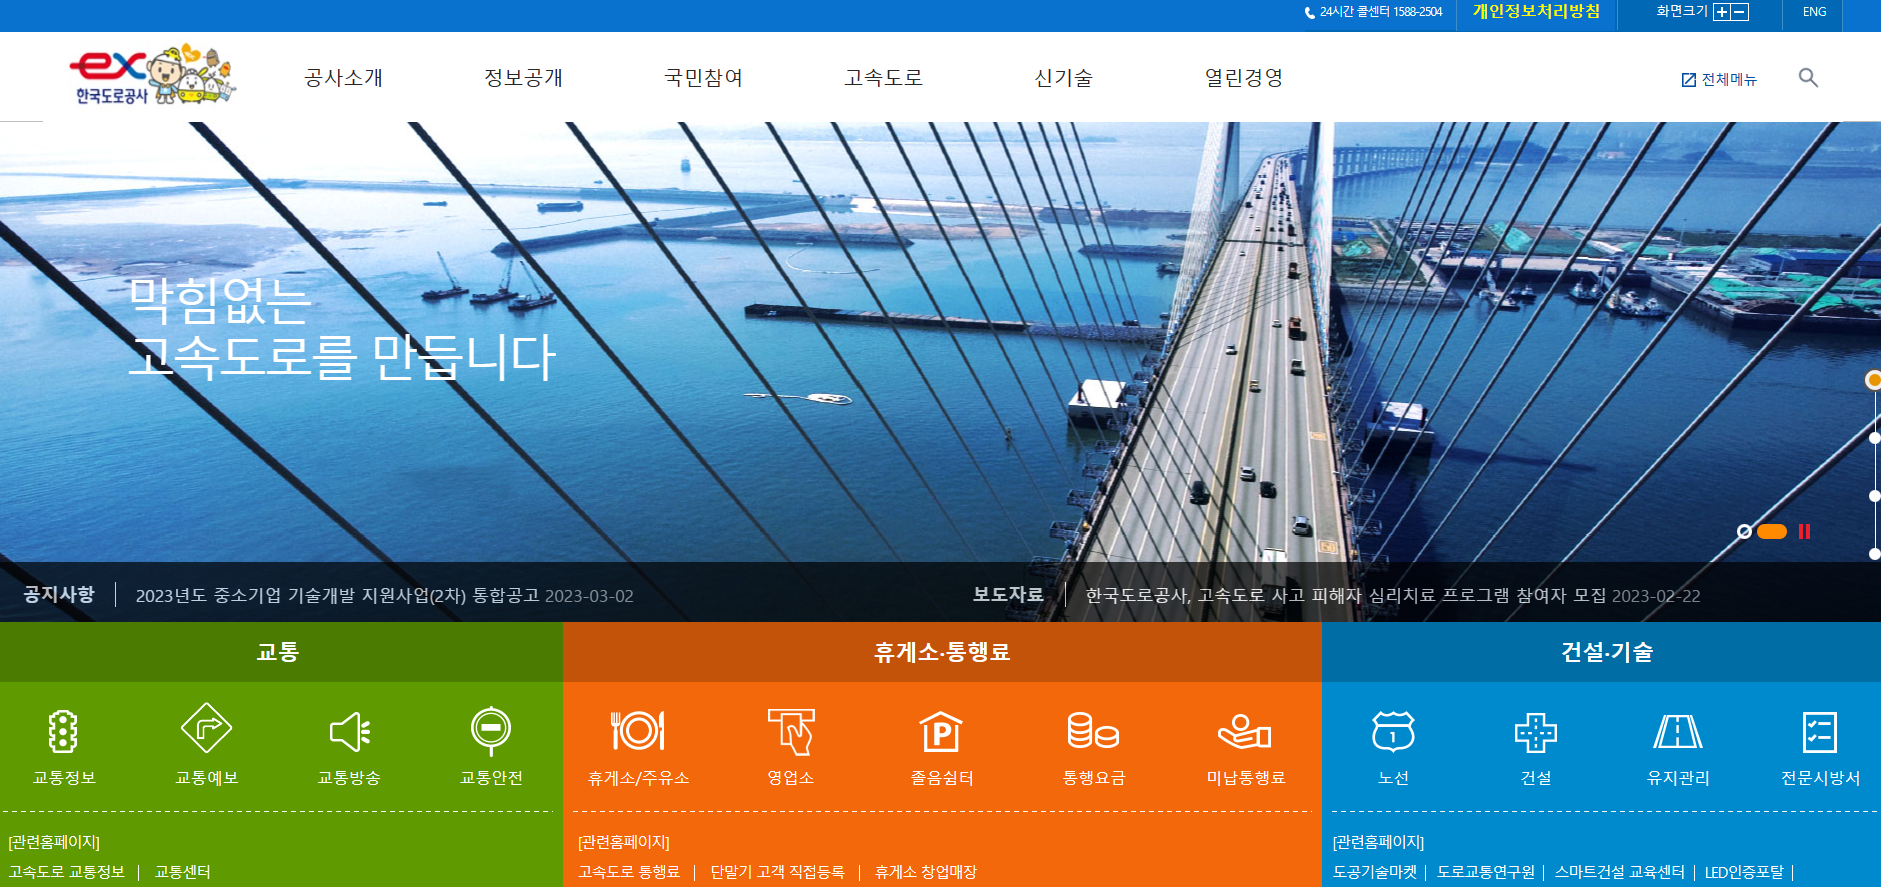 한국도로교통공사 홈페이지